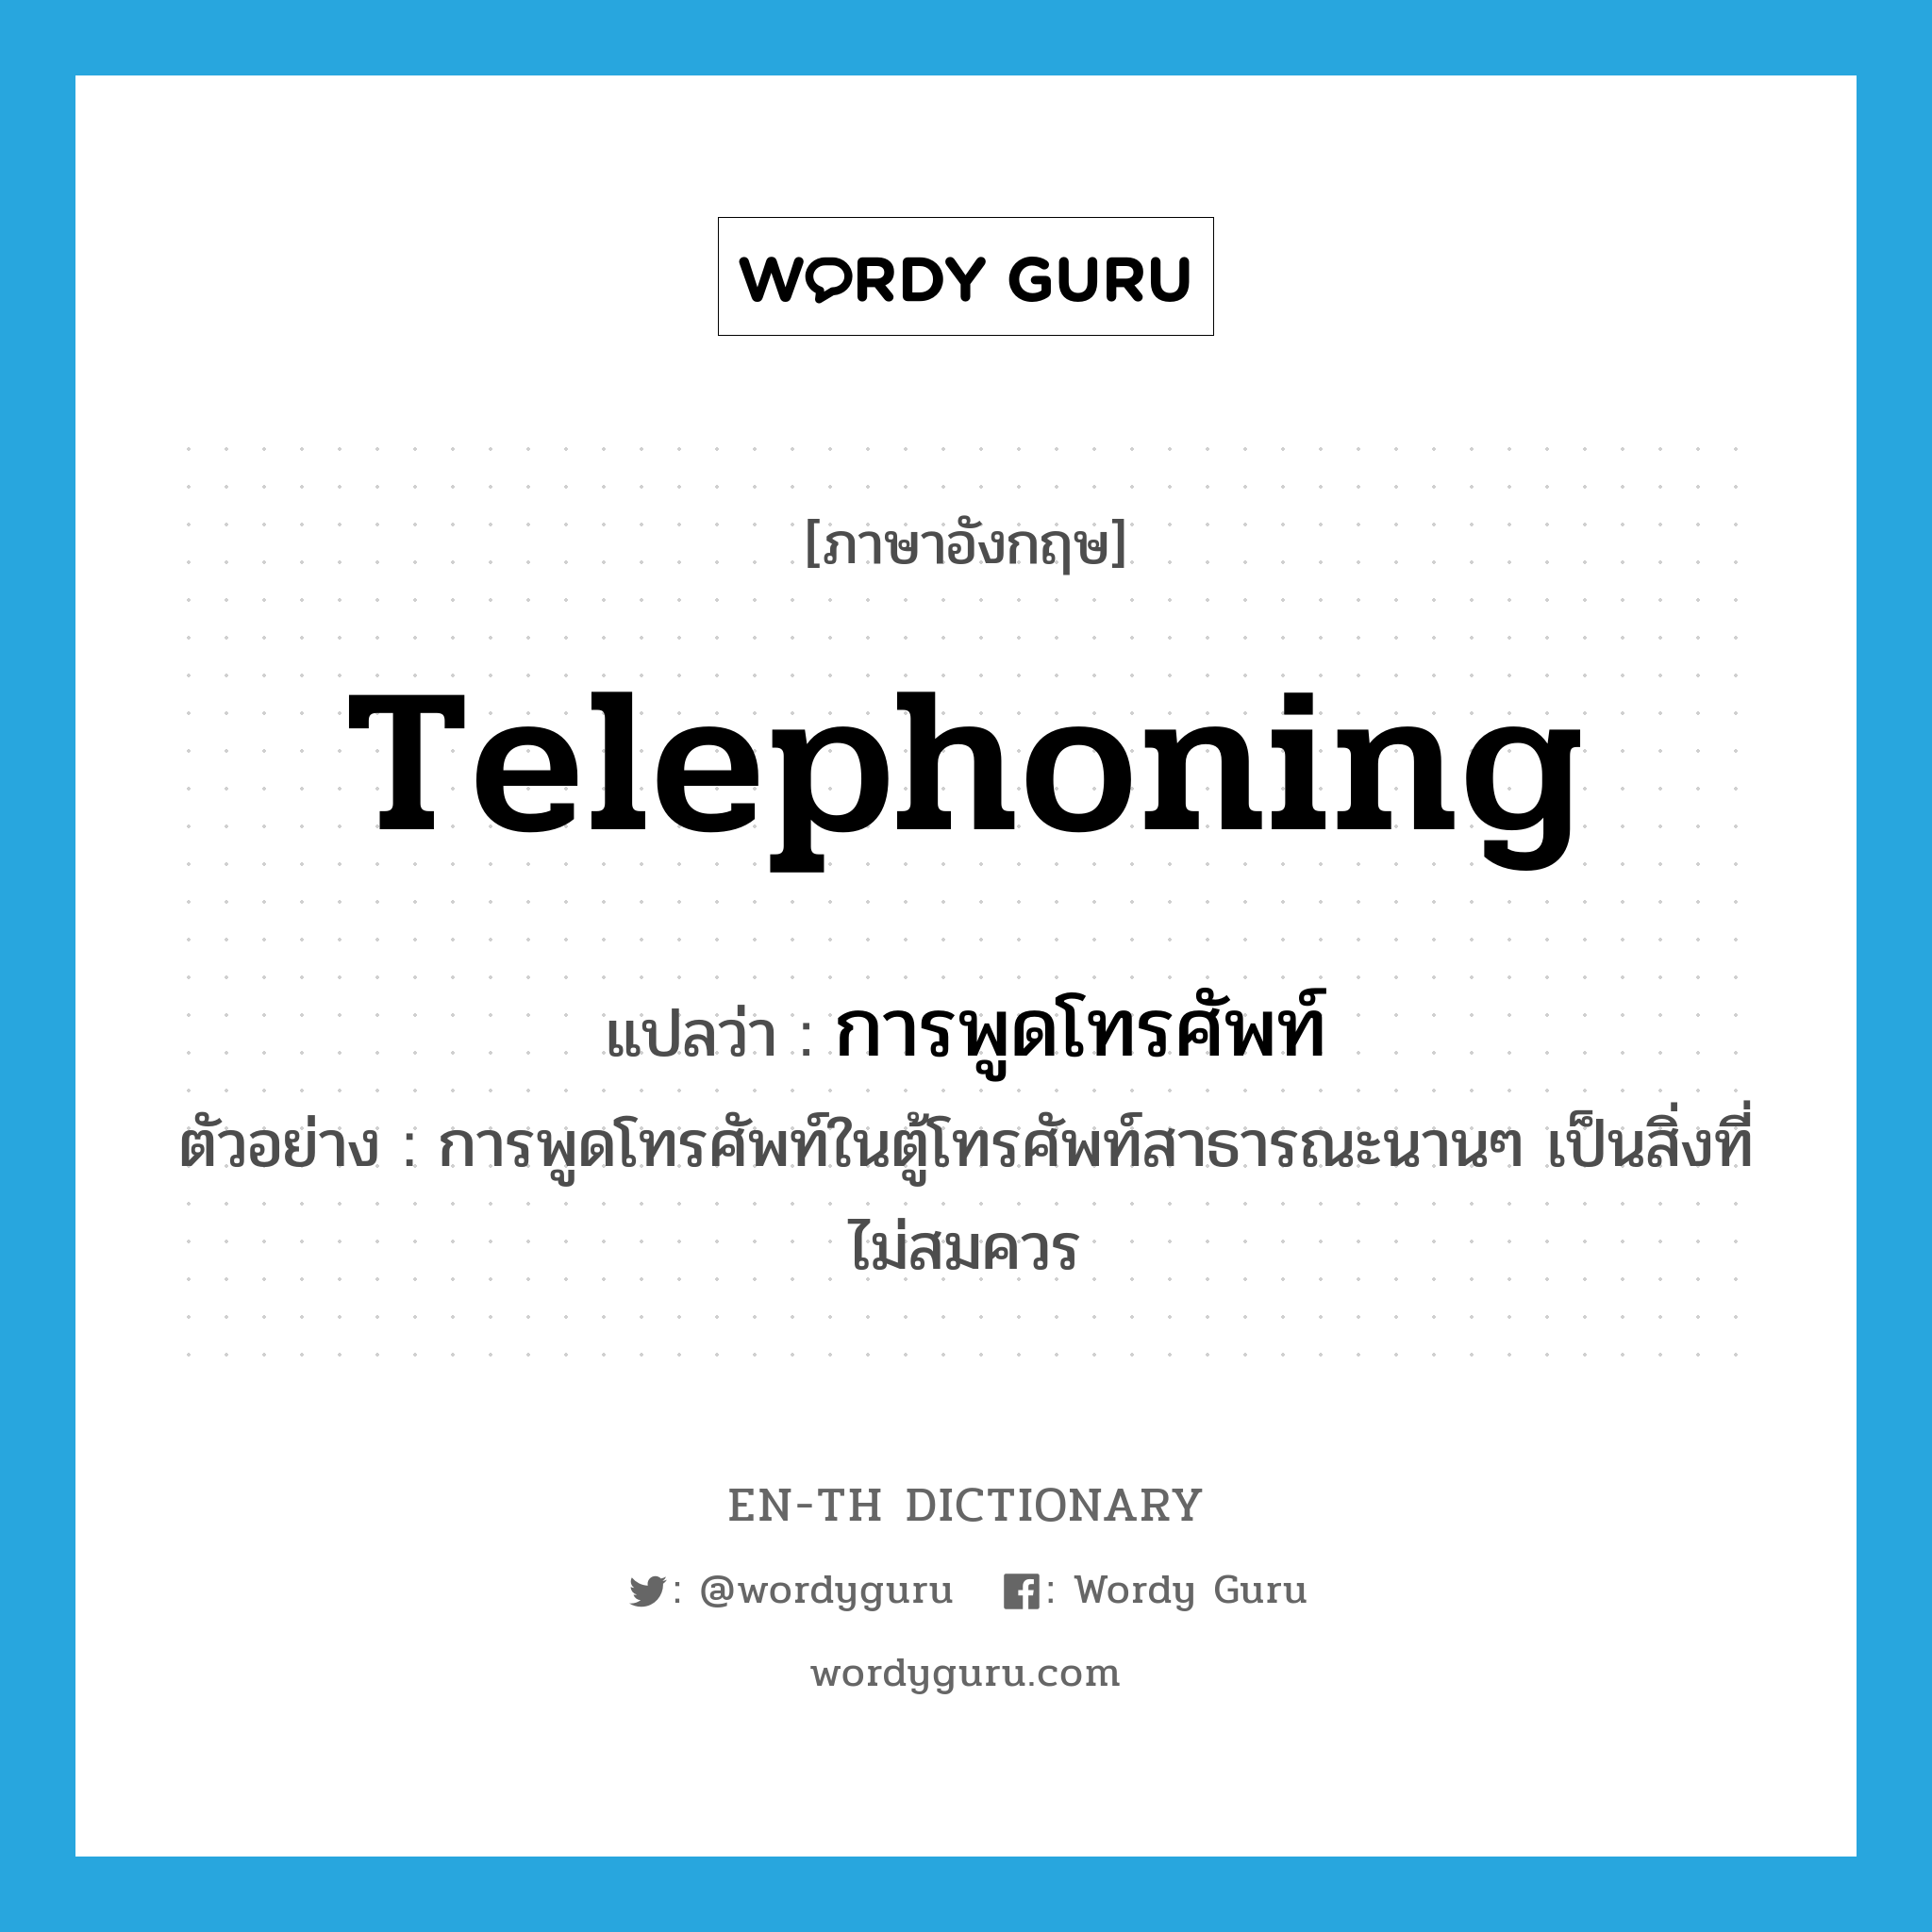 telephoning แปลว่า?, คำศัพท์ภาษาอังกฤษ telephoning แปลว่า การพูดโทรศัพท์ ประเภท N ตัวอย่าง การพูดโทรศัพท์ในตู้โทรศัพท์สาธารณะนานๆ เป็นสิ่งที่ไม่สมควร หมวด N